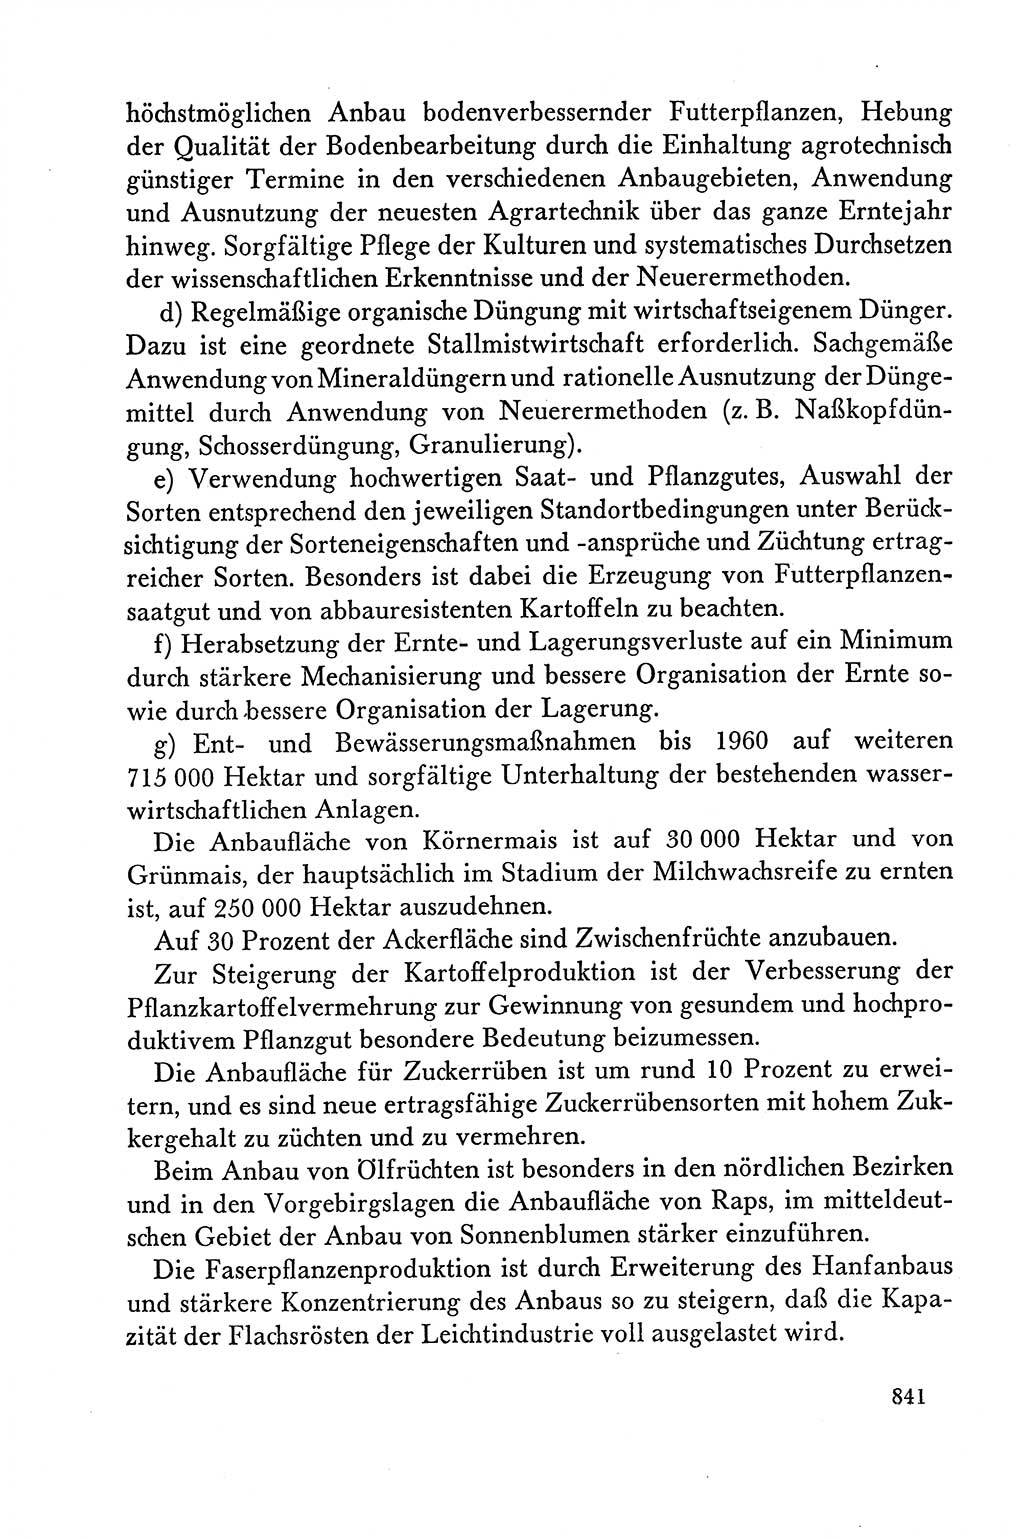 Dokumente der Sozialistischen Einheitspartei Deutschlands (SED) [Deutsche Demokratische Republik (DDR)] 1958-1959, Seite 841 (Dok. SED DDR 1958-1959, S. 841)